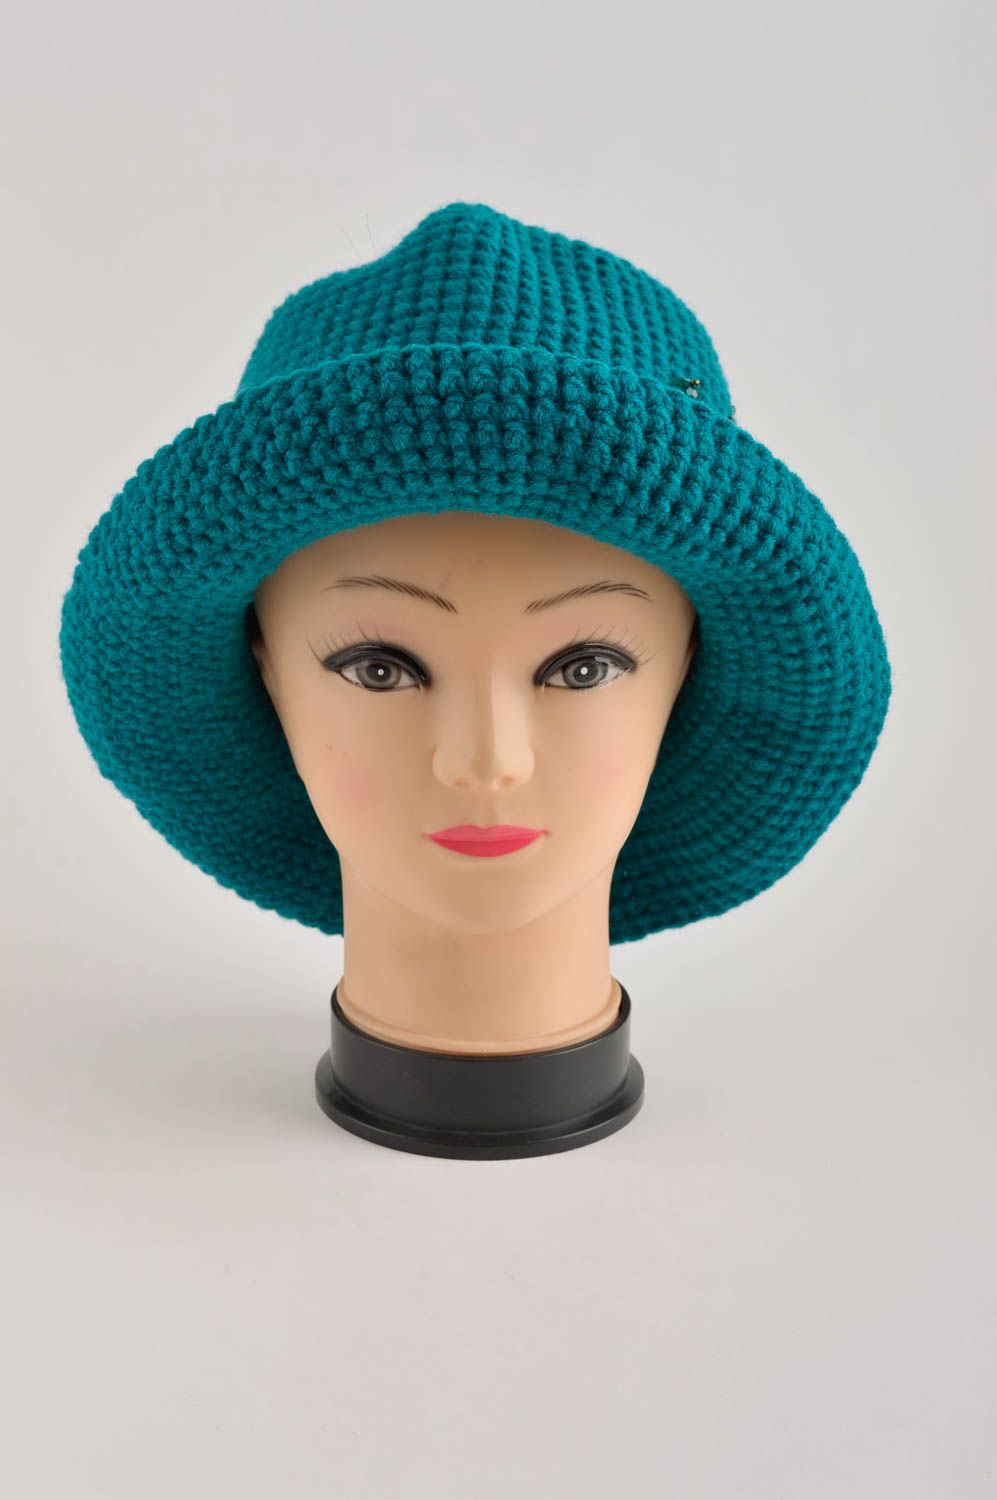 Handmade hat crocheted hat woolen hat for women gift ideas unusual headwear photo 3